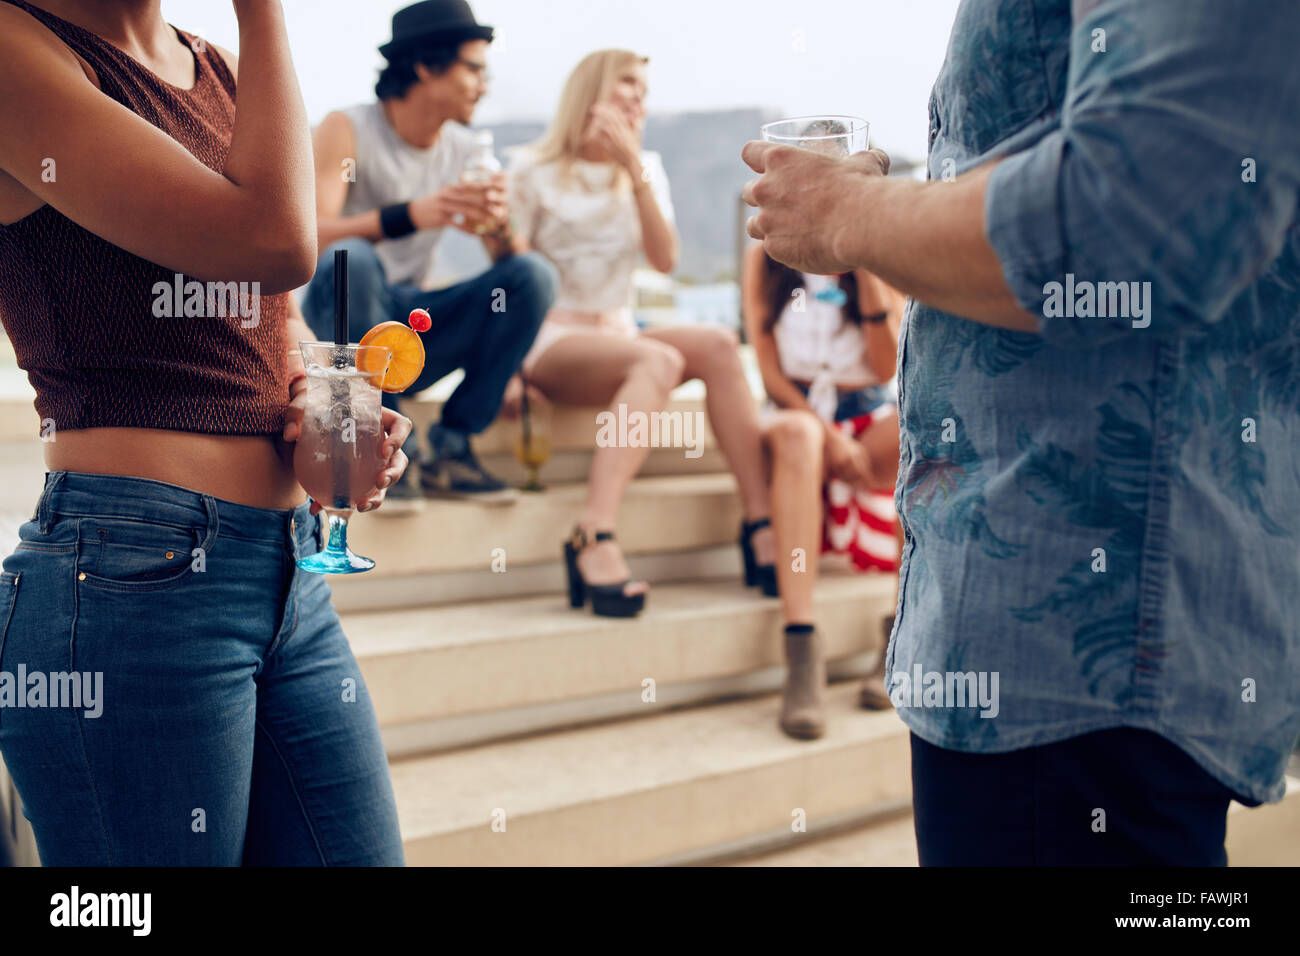 Zugeschnittenen Schuss von ein paar Cocktails Gläser während drei Menschen miteinander zu reden, im Hintergrund halten. Junge Menschen havi Stockfoto